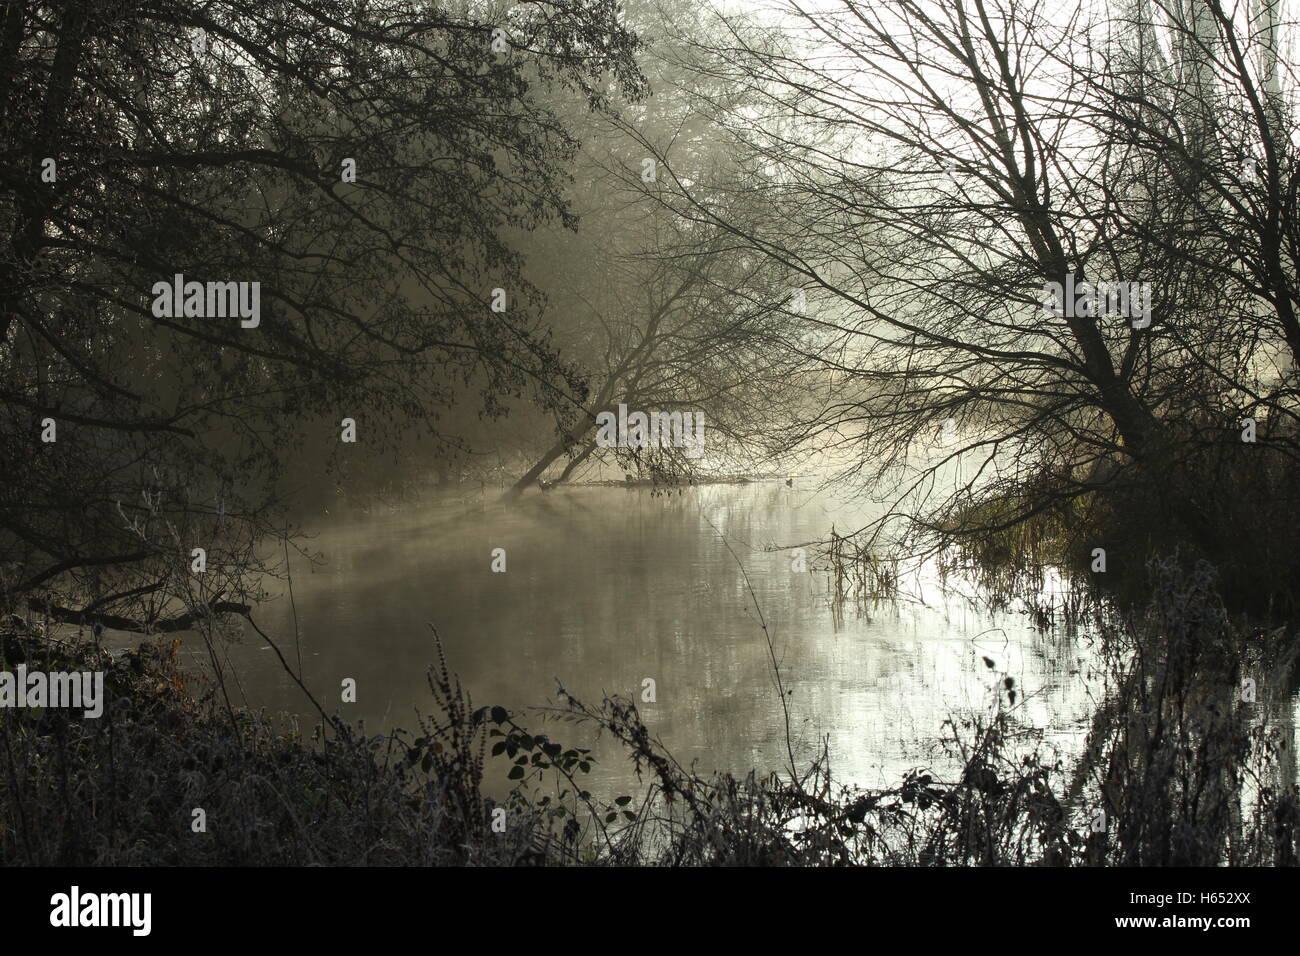 Froid matin d'hiver sur la rivière Colne, Parc du Château de Colchester, Essex. Mist est passé de l'eau avec le soleil matinal. Banque D'Images